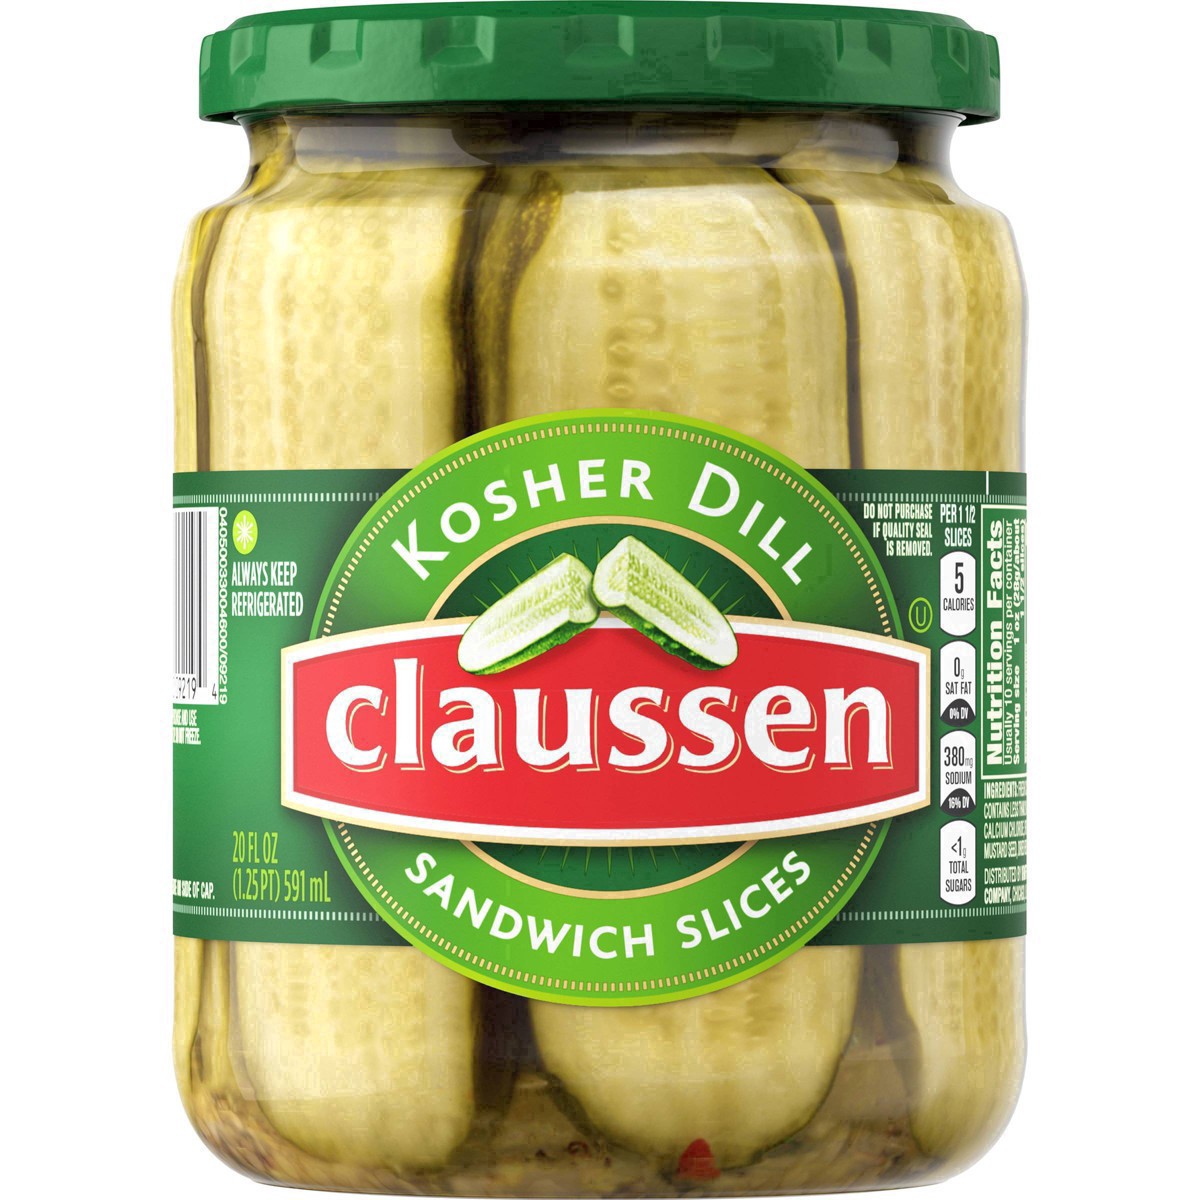 slide 138 of 144, Claussen Kosher Dill Pickle Sandwich Slices, 20 fl. oz. Jar, 20 fl oz